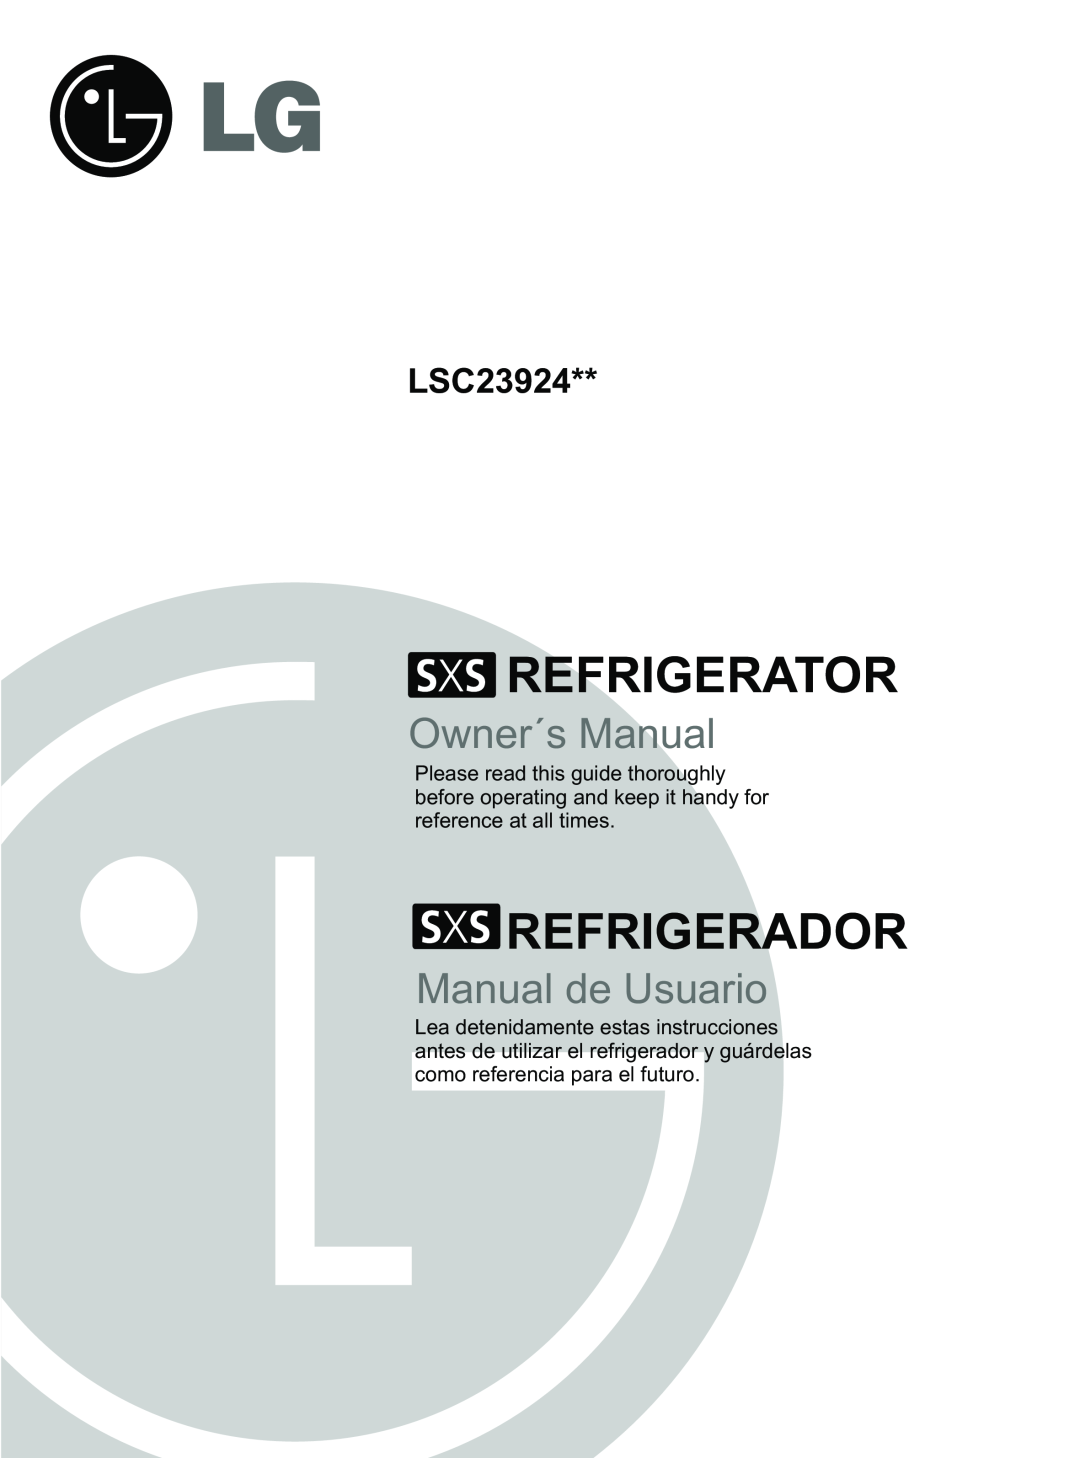 LG Electronics LSC23924SB, LSC23924ST owner manual Refrigerator, Refrigerador, Owner´s Manual, Manual de Usuario 